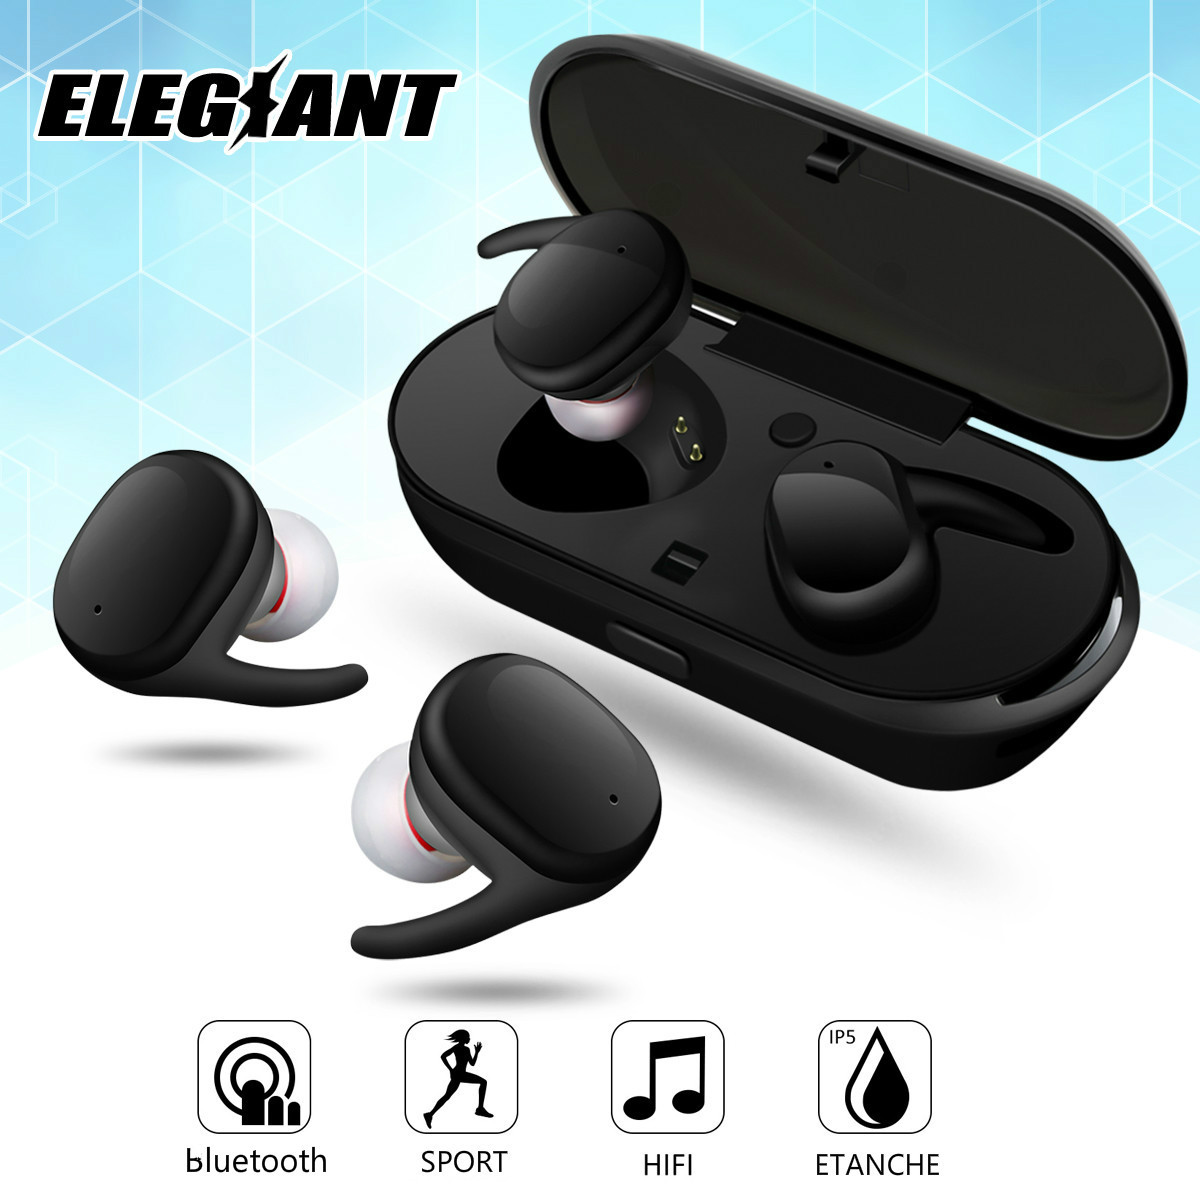 ELEGIANT-TWS-bluetooth-Headset-BT40-Wireless-Headphone-Long-Life-Powerful-Bass-Low-latency-Earphone--1890552-1